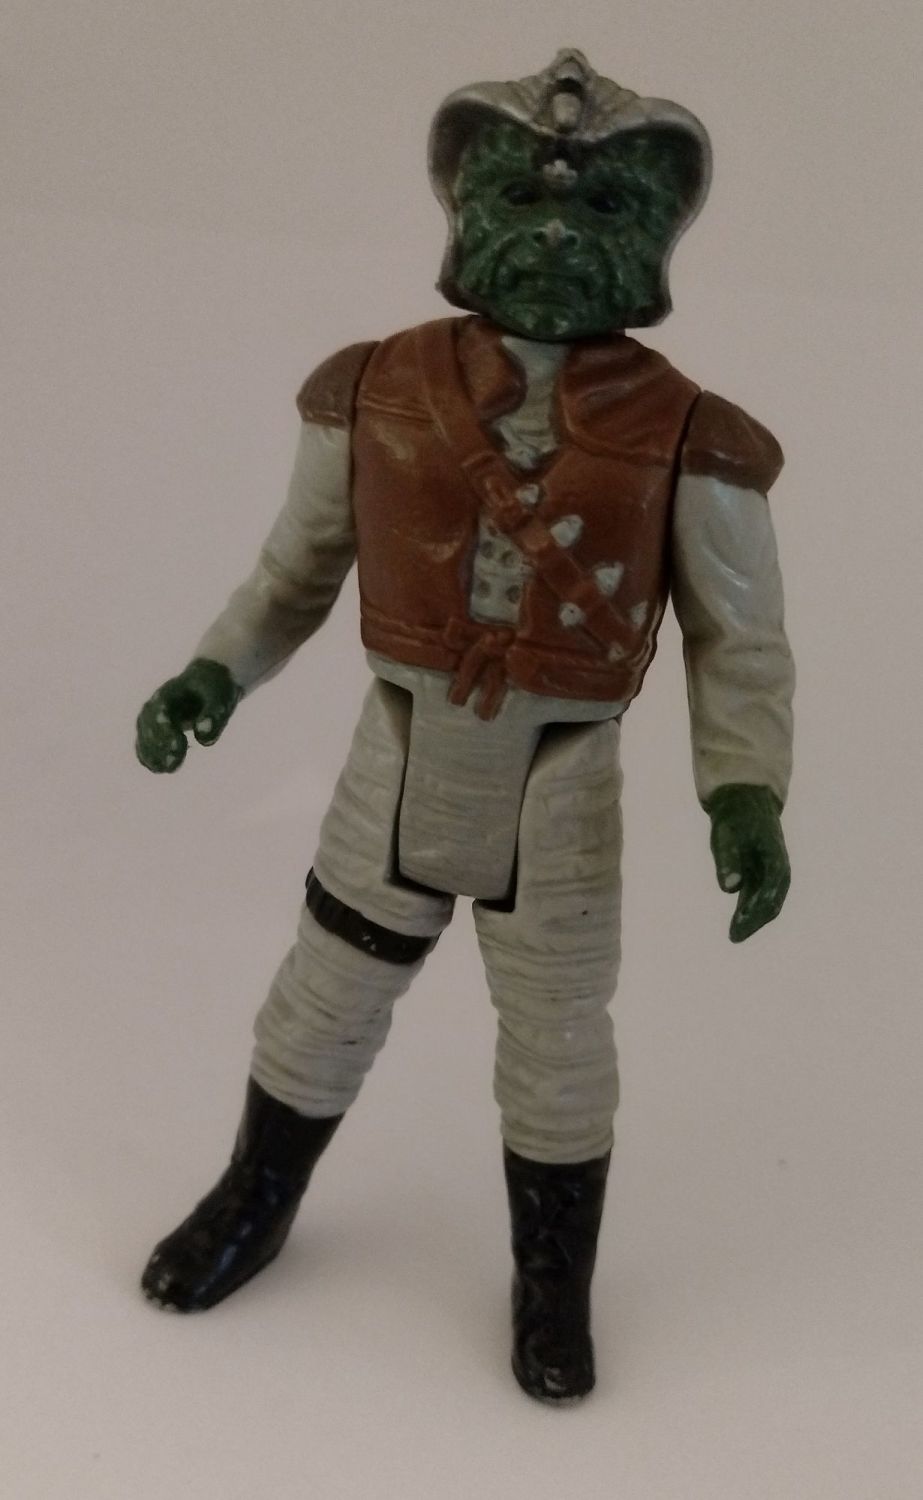 Vintage Star Wars Figure - Klaatu - Original 1980's Vintage Figure 